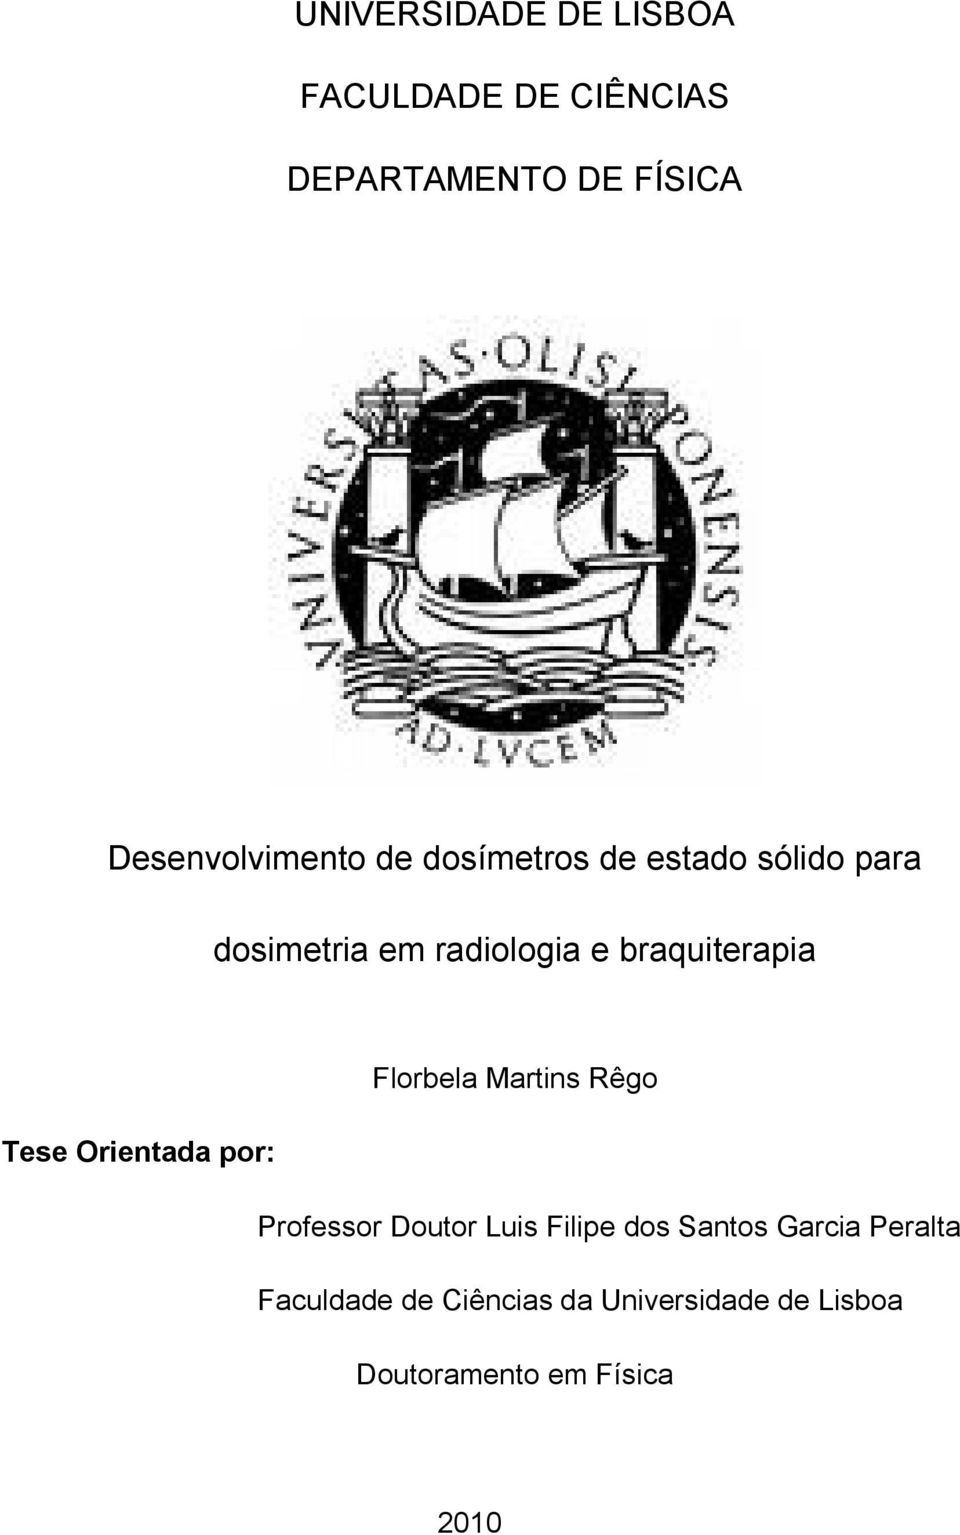 Florbela Martins Rêgo Tese Orientada por: Professor Doutor Luis Filipe dos Santos